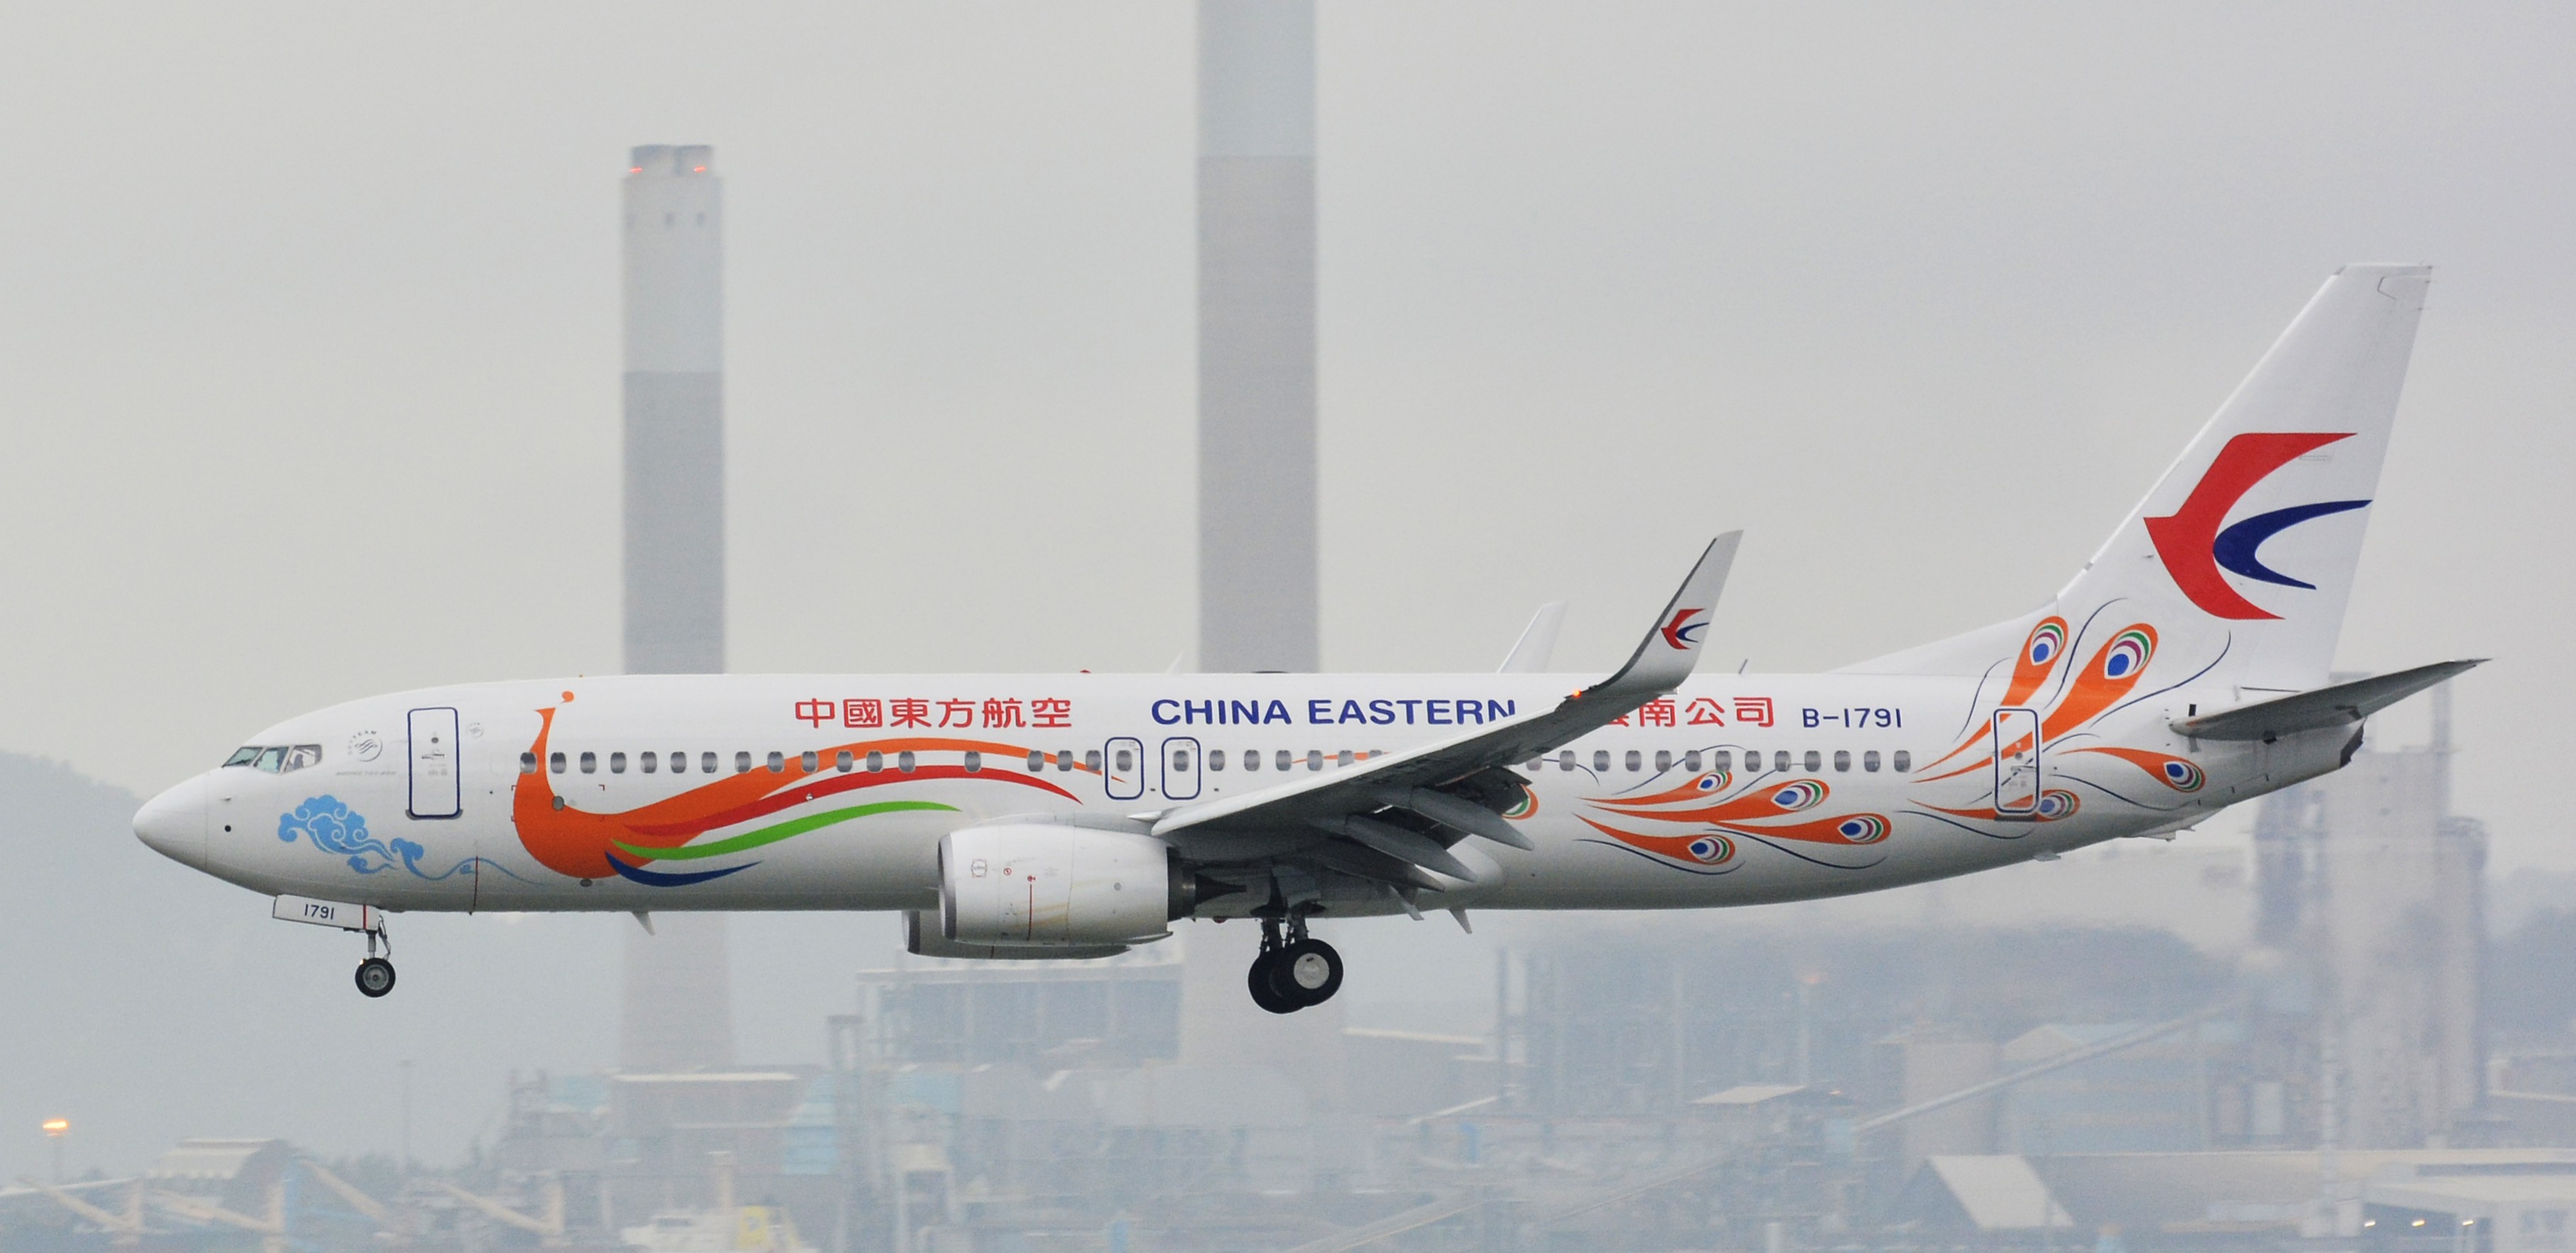 Авиарейсы в китай. China Eastern Airlines Flight 5735. Рейс 5735 China Eastern Airlines. Boeing 737-200 China Eastern. C919 China Eastern Airlines.